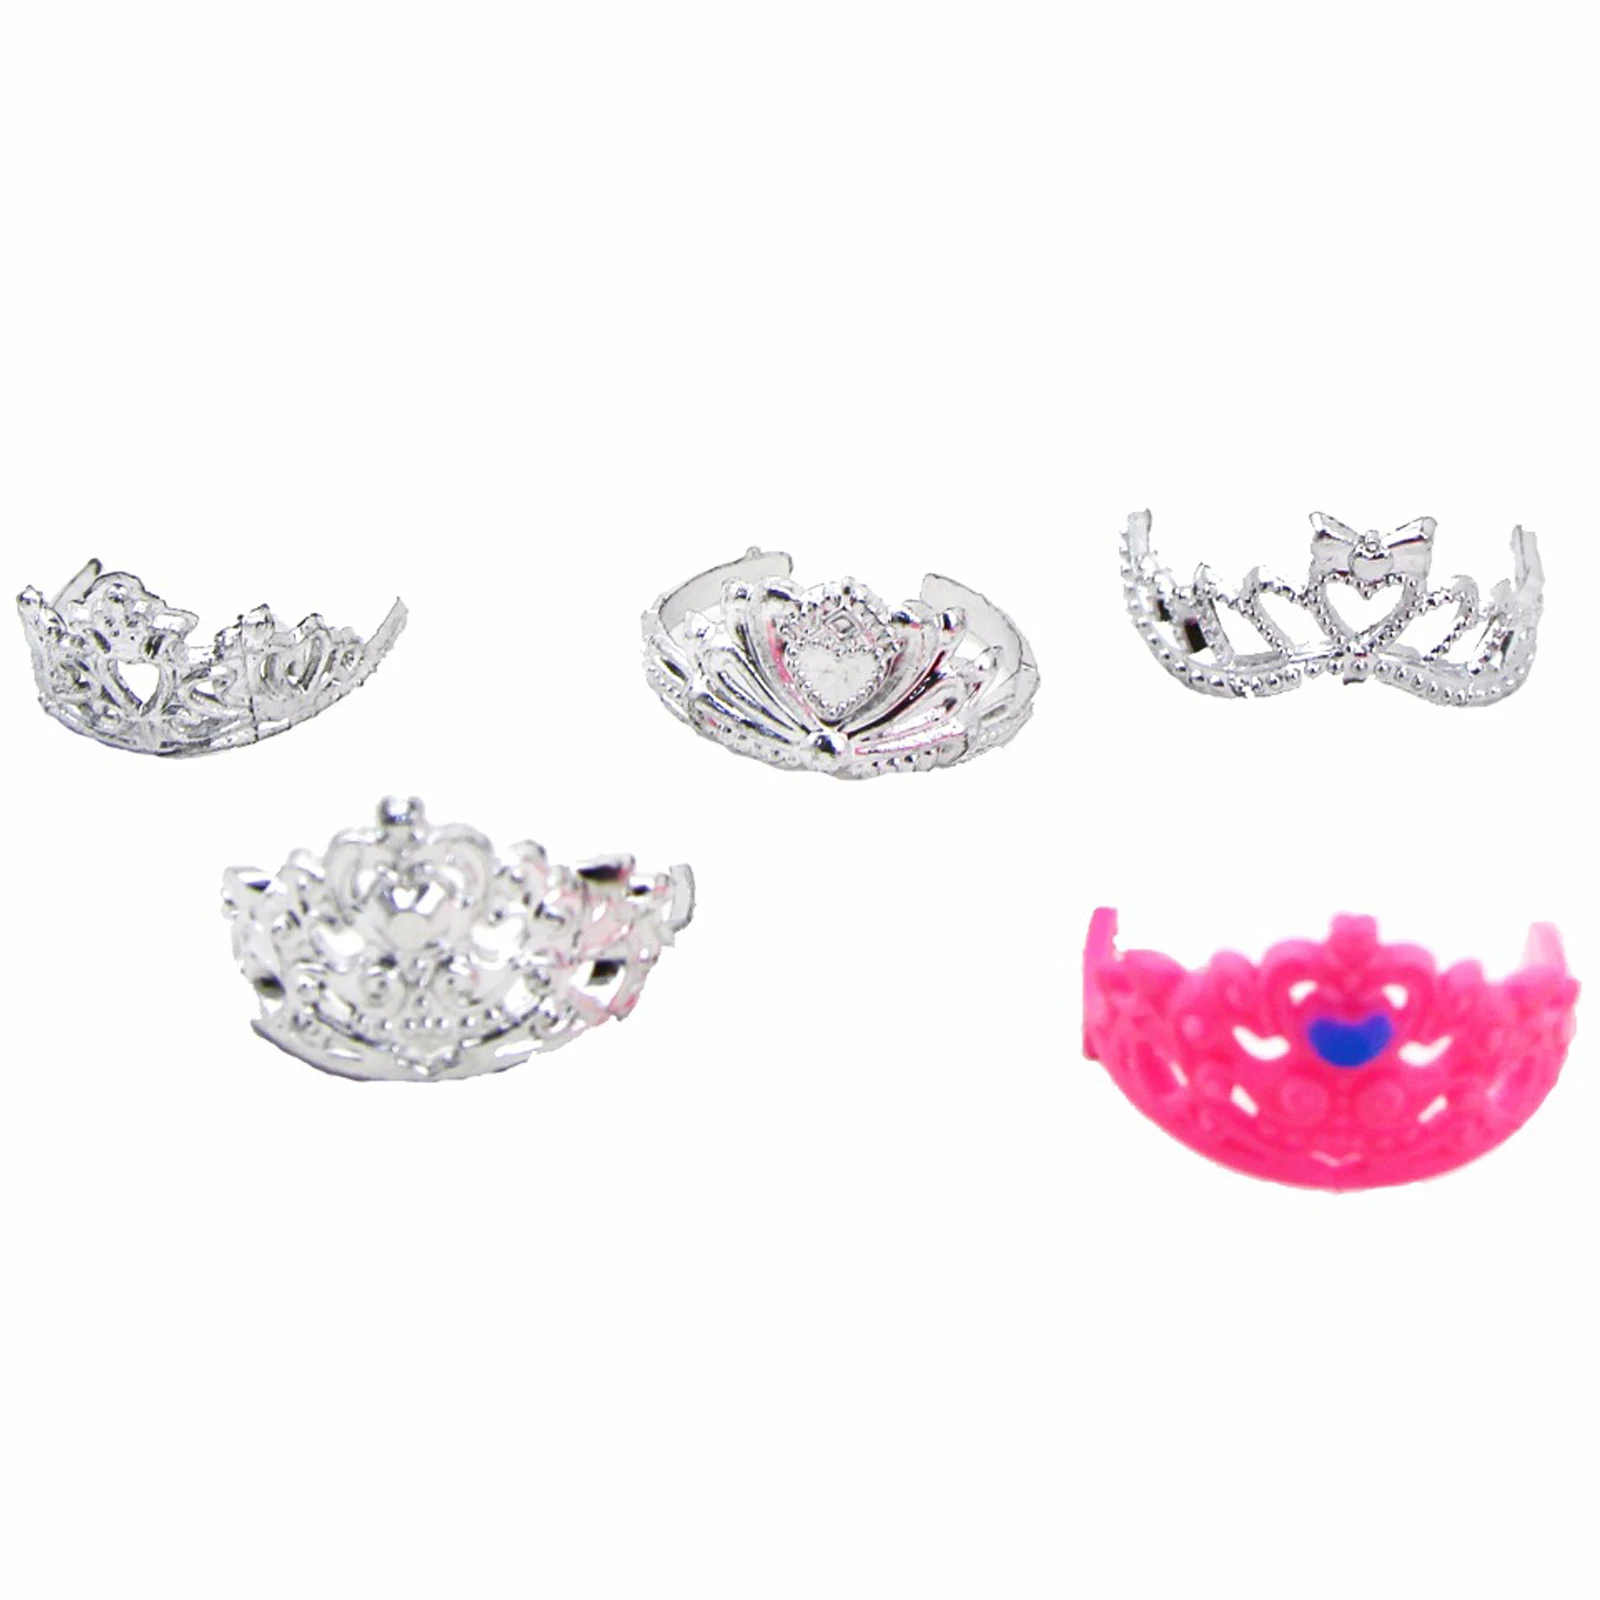 14 шт./лот подарочный набор = 1x платье принцессы + 13x аксессуары ожерелье с короной